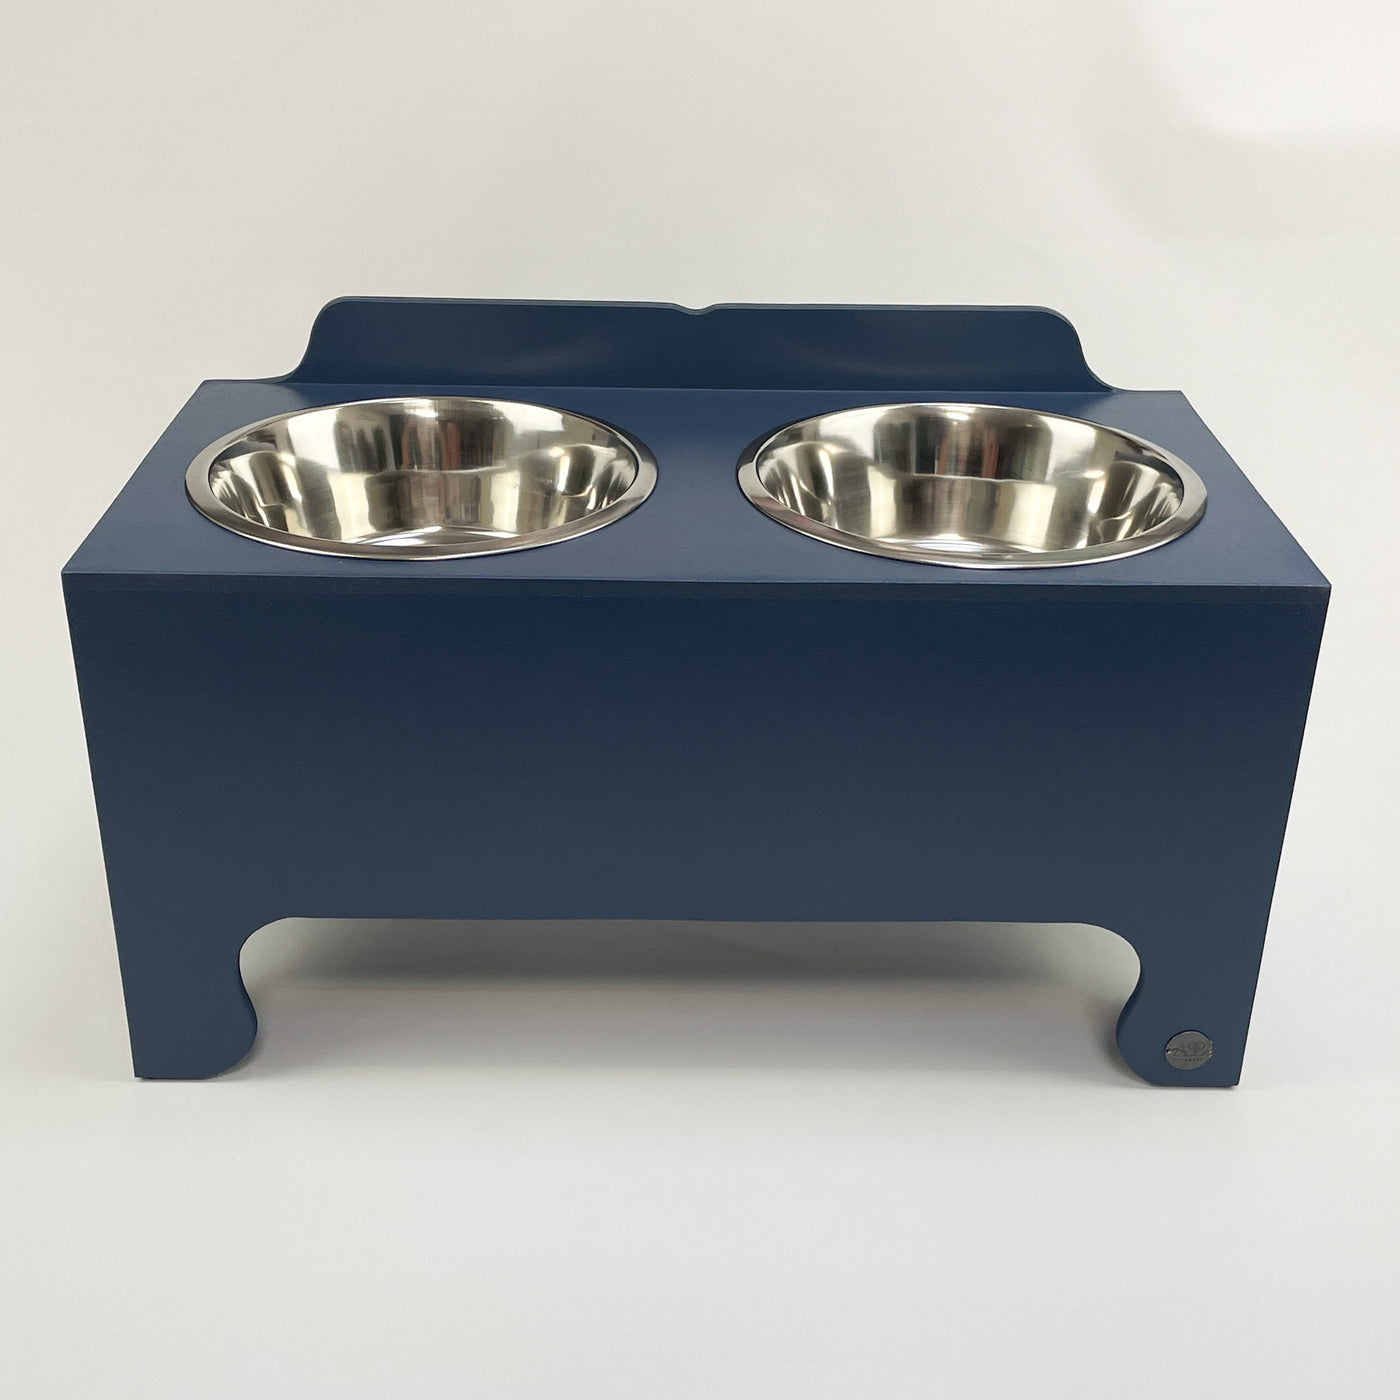 Navy extra large raised dog feeding stand, double-bowl design.